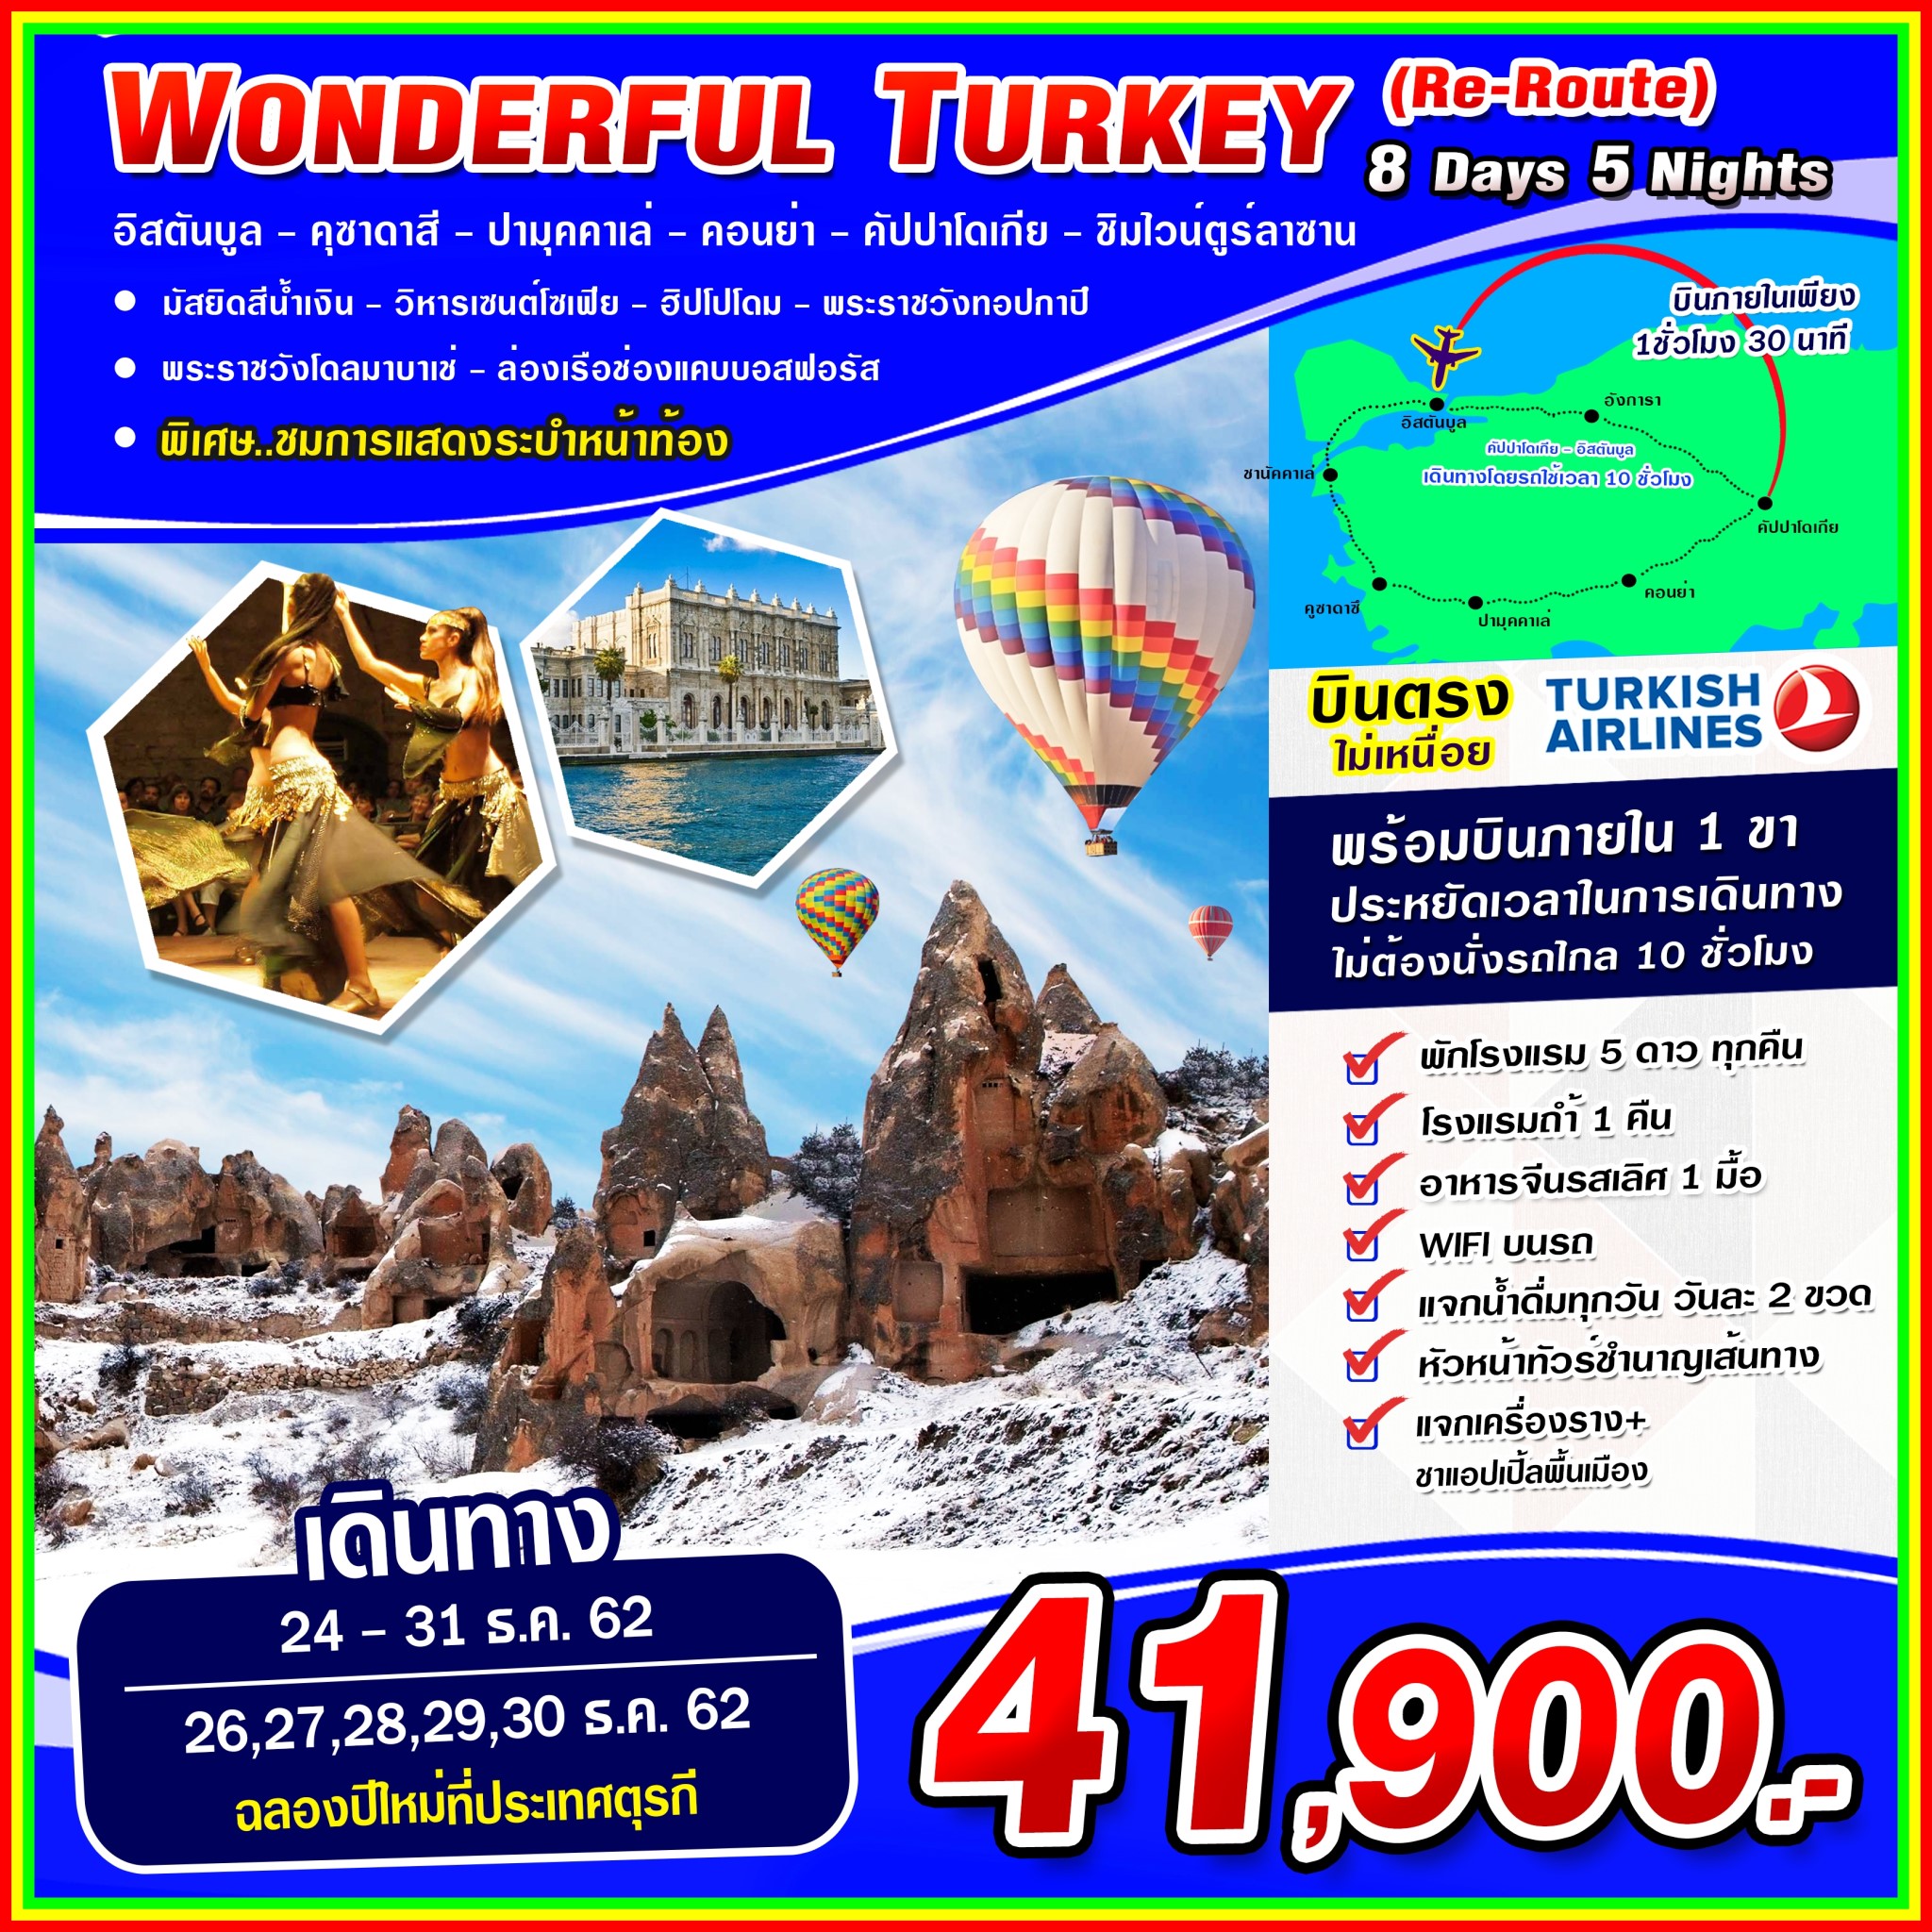 ปีใหม่ ทัวร์ตรุกี Wonderful Turkey (Re-Route) NEW YEAR 8วัน5คืน (DEC19-JAN20)